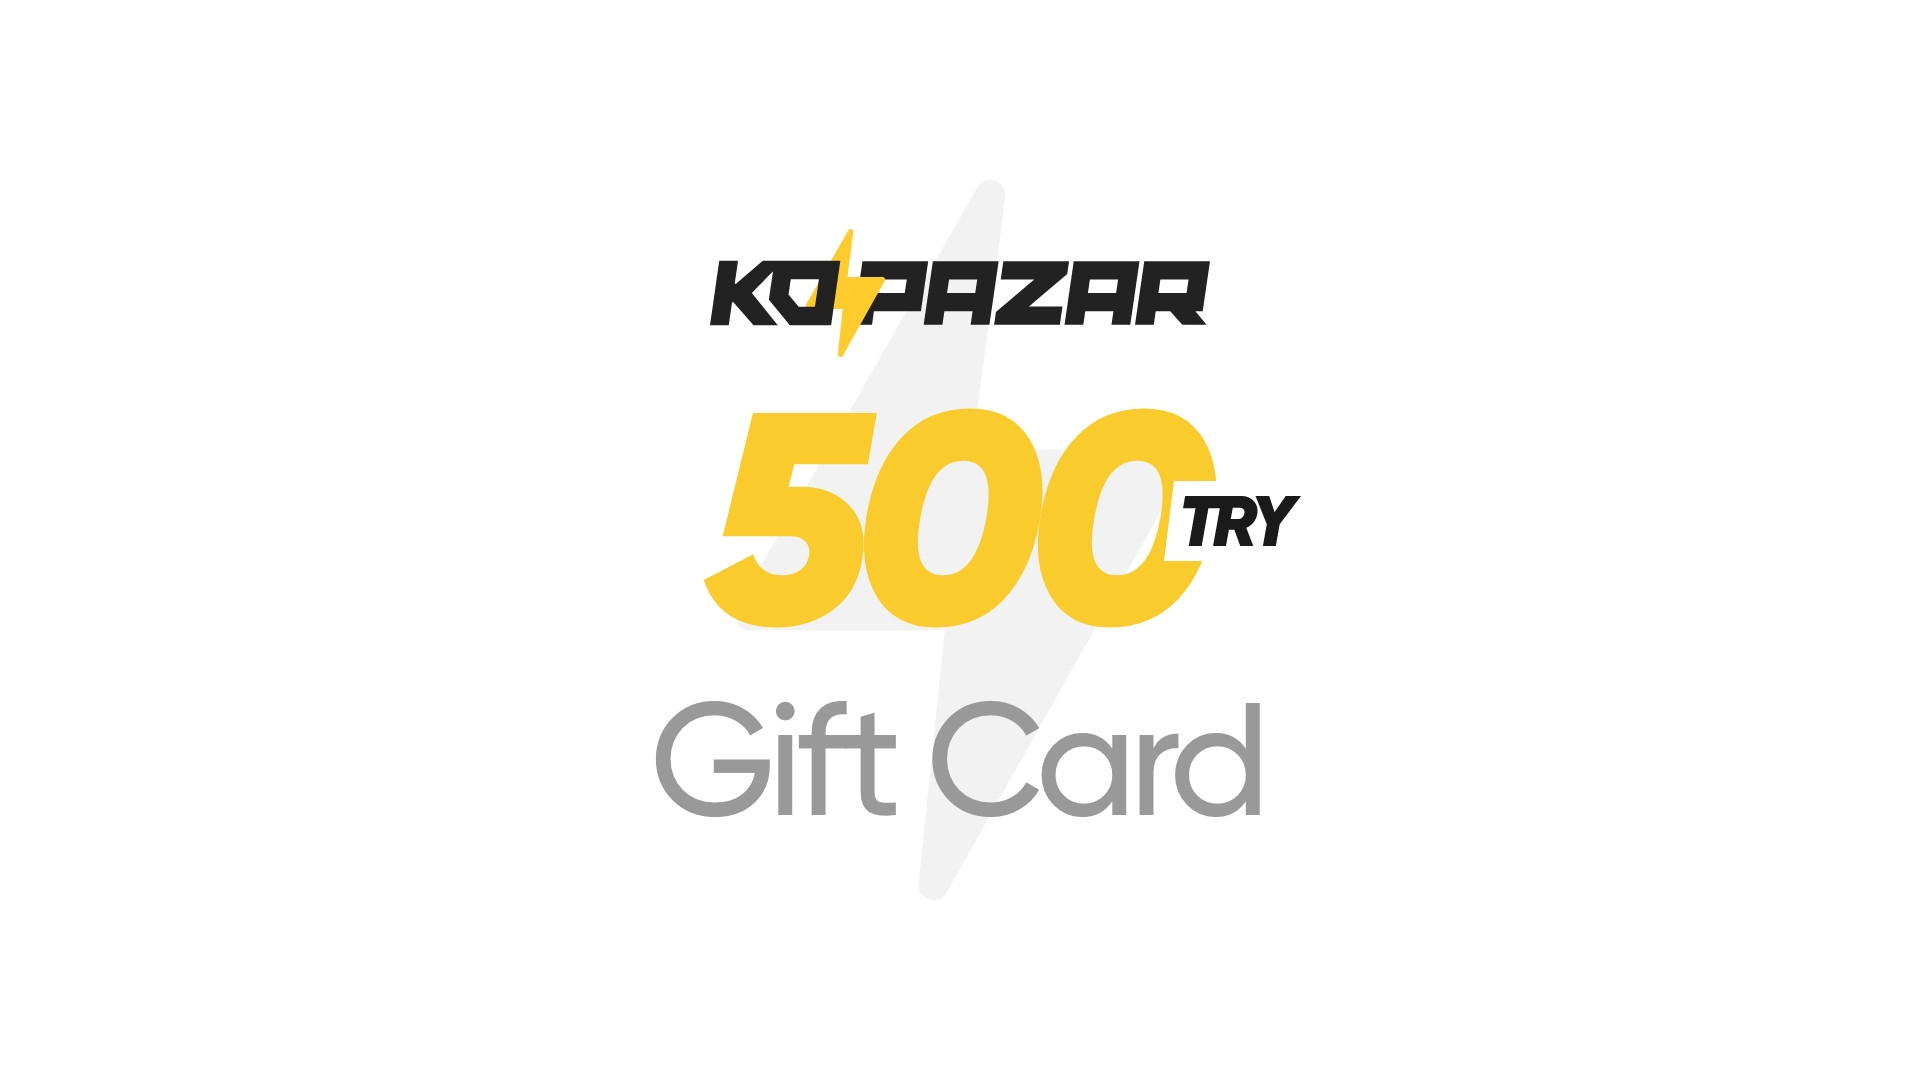 Kopazar 500 TRY Gift Card